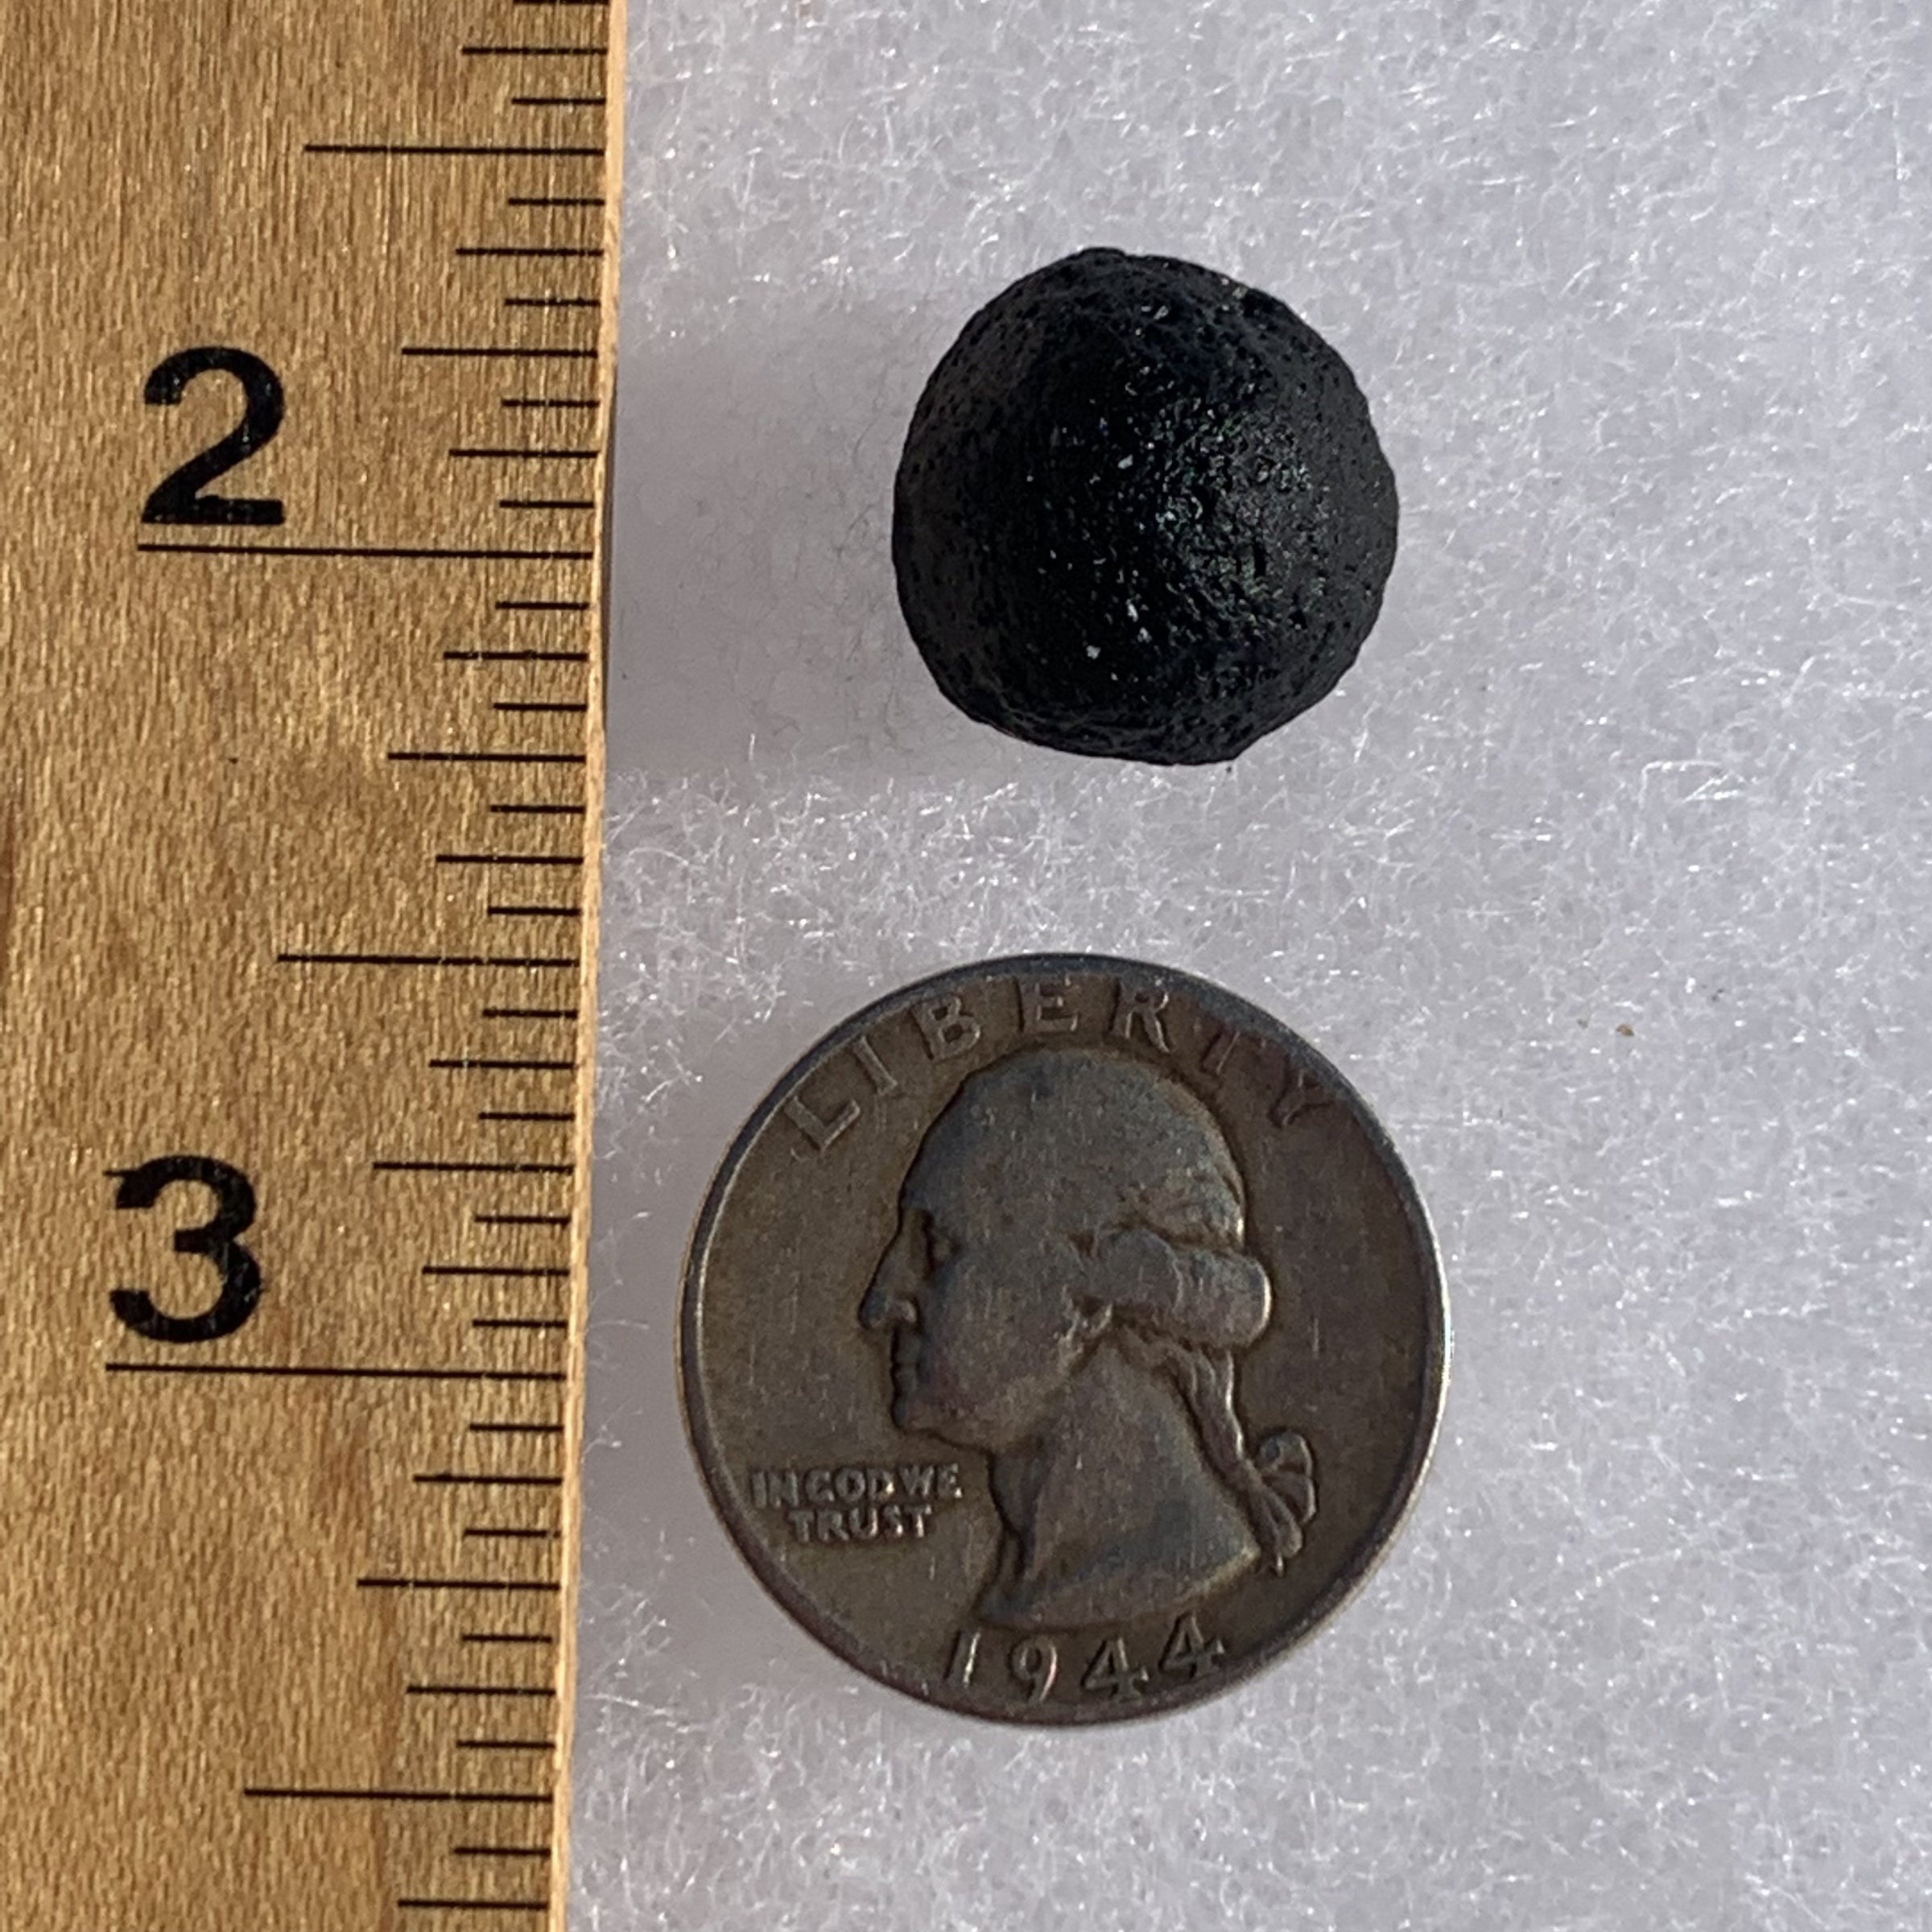 Australite Tektite 4.2 grams AU43-Moldavite Life